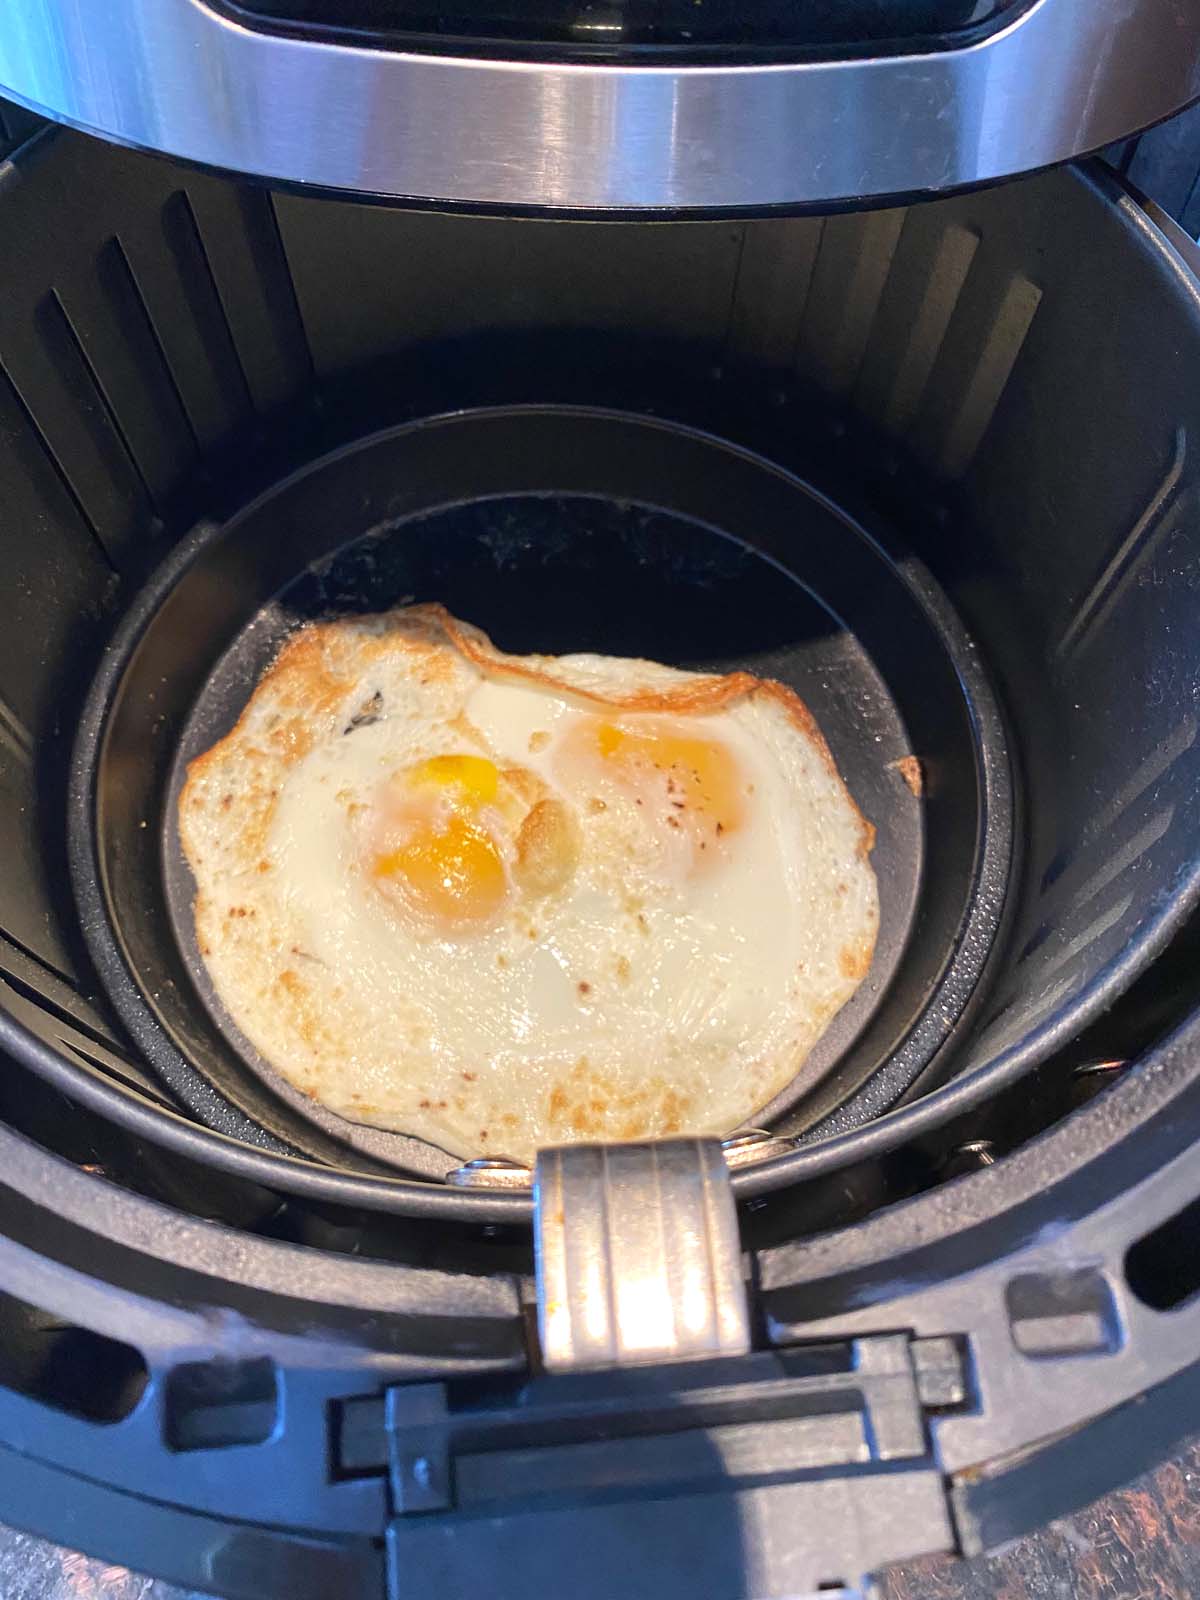 https://www.melaniecooks.com/wp-content/uploads/2022/03/Air-Fryer-Fried-Eggs-2.jpg